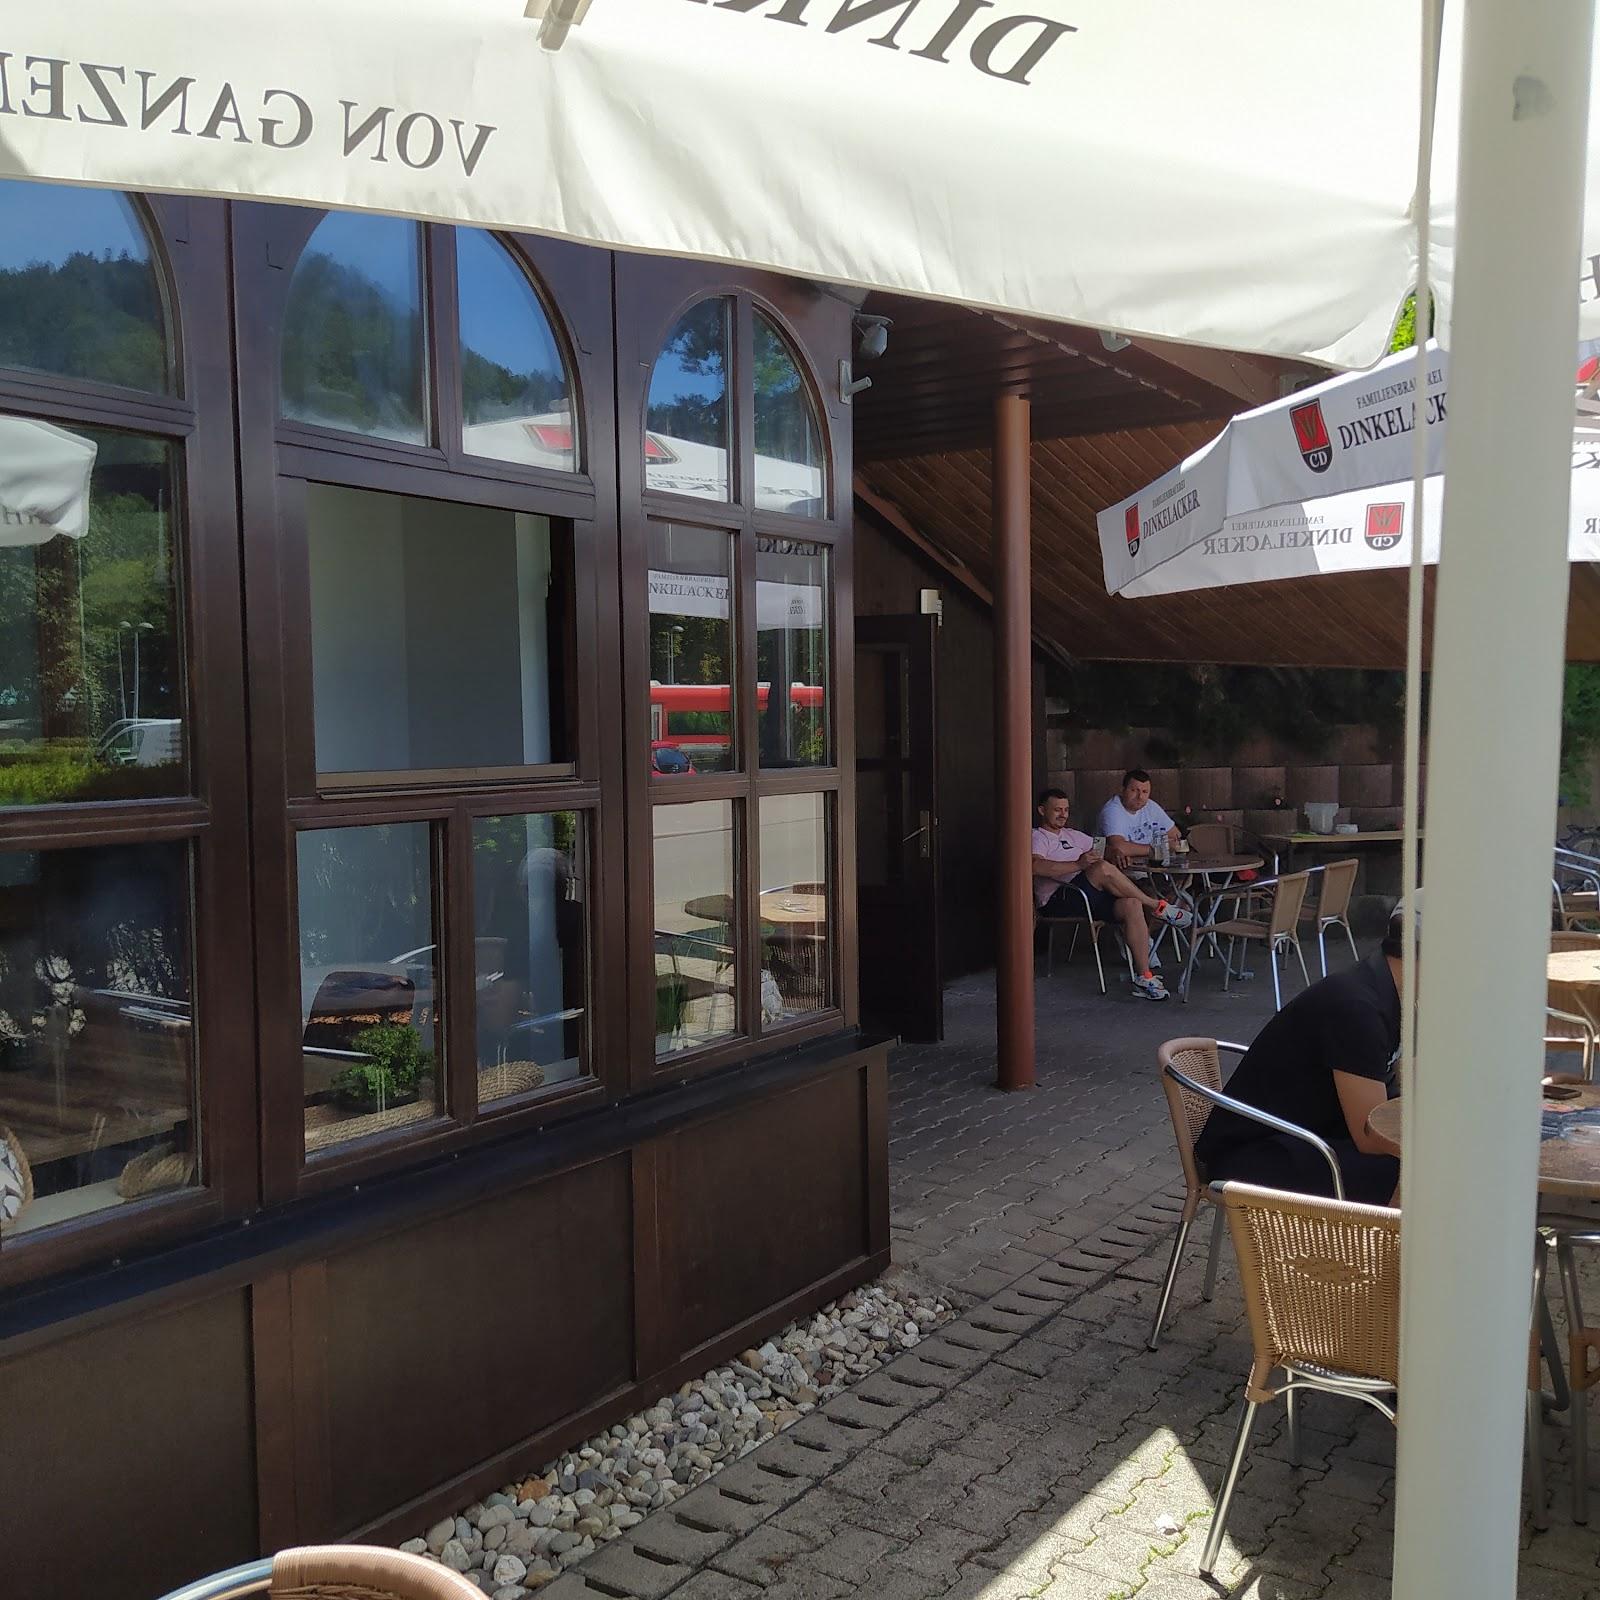 Restaurant "Sportsbar G" in Bad Liebenzell